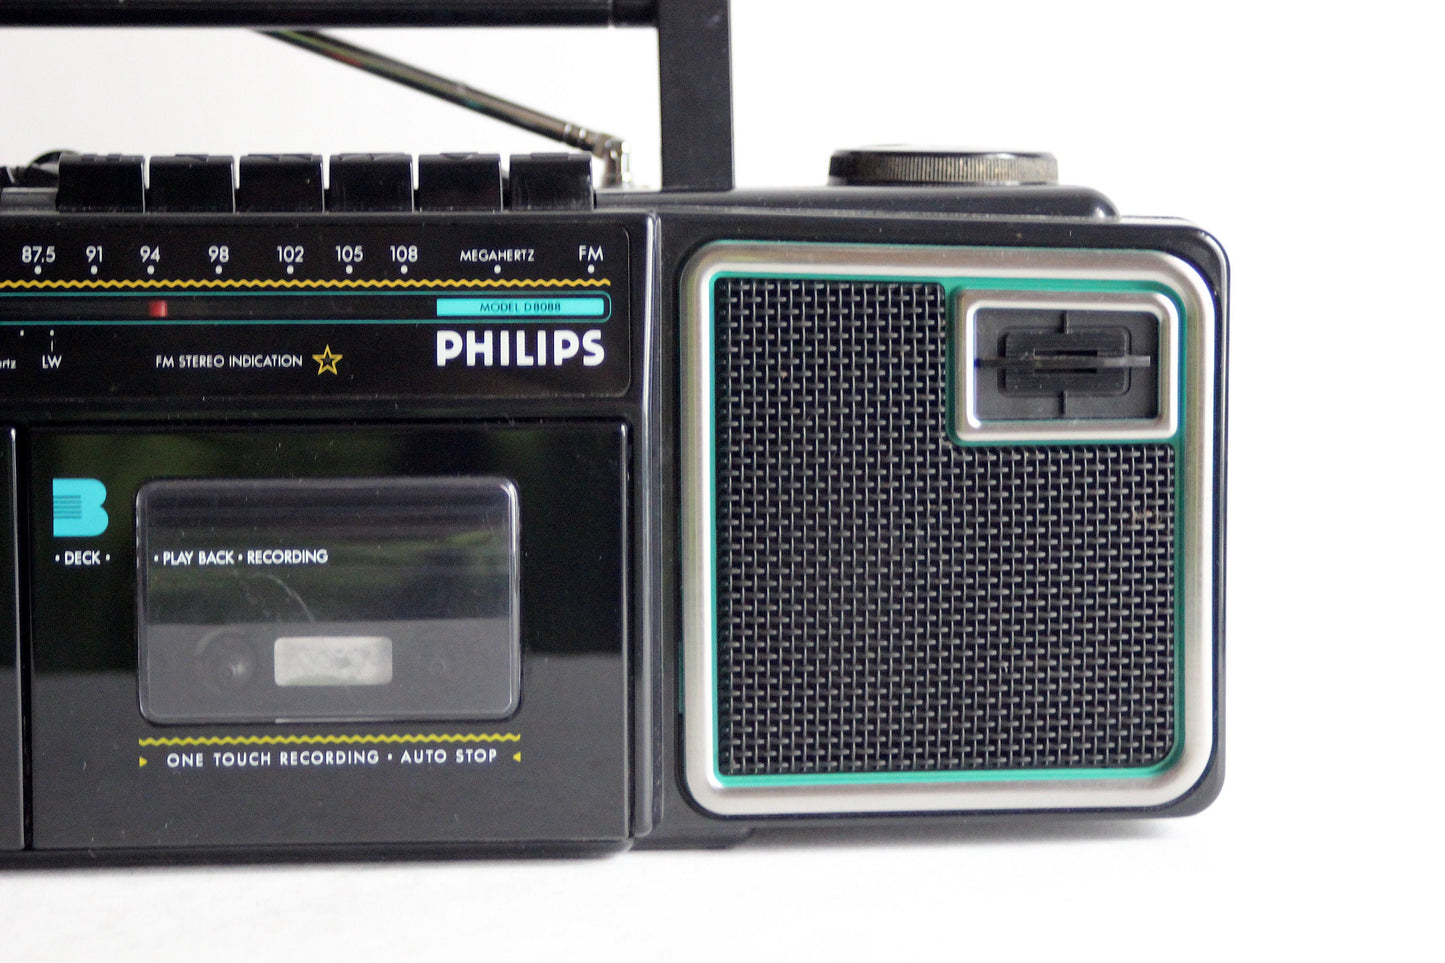 PHILIPS D8088 Stereo Radio double Cassette recorder  FM-AM. Memphis style. Austria 1987